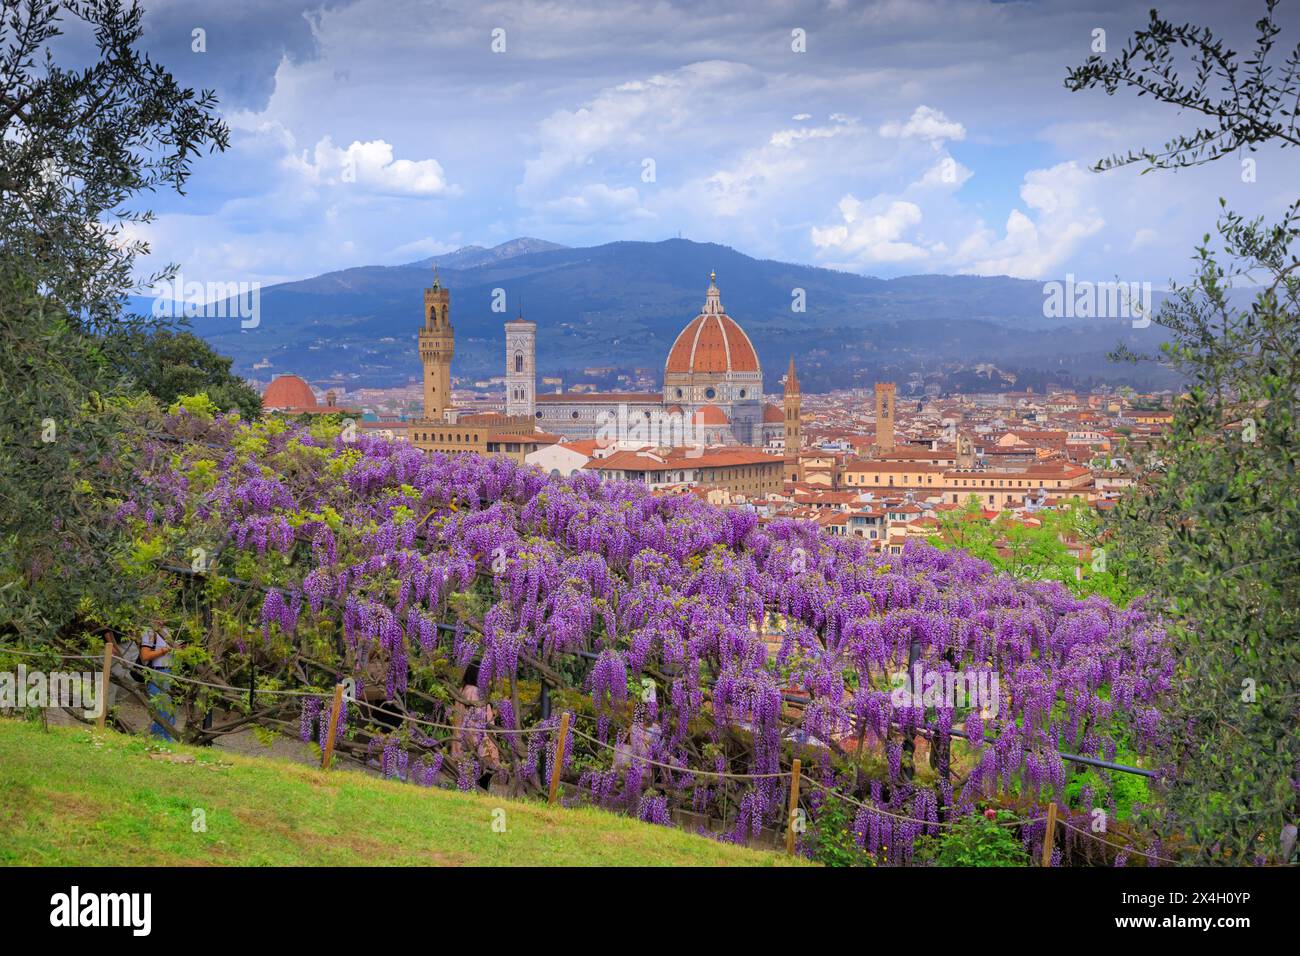 Primavera di Firenze: Cattedrale di Santa Maria del Fiore vista dal Giardino Bardini con tipica glicine in fiore. Foto Stock